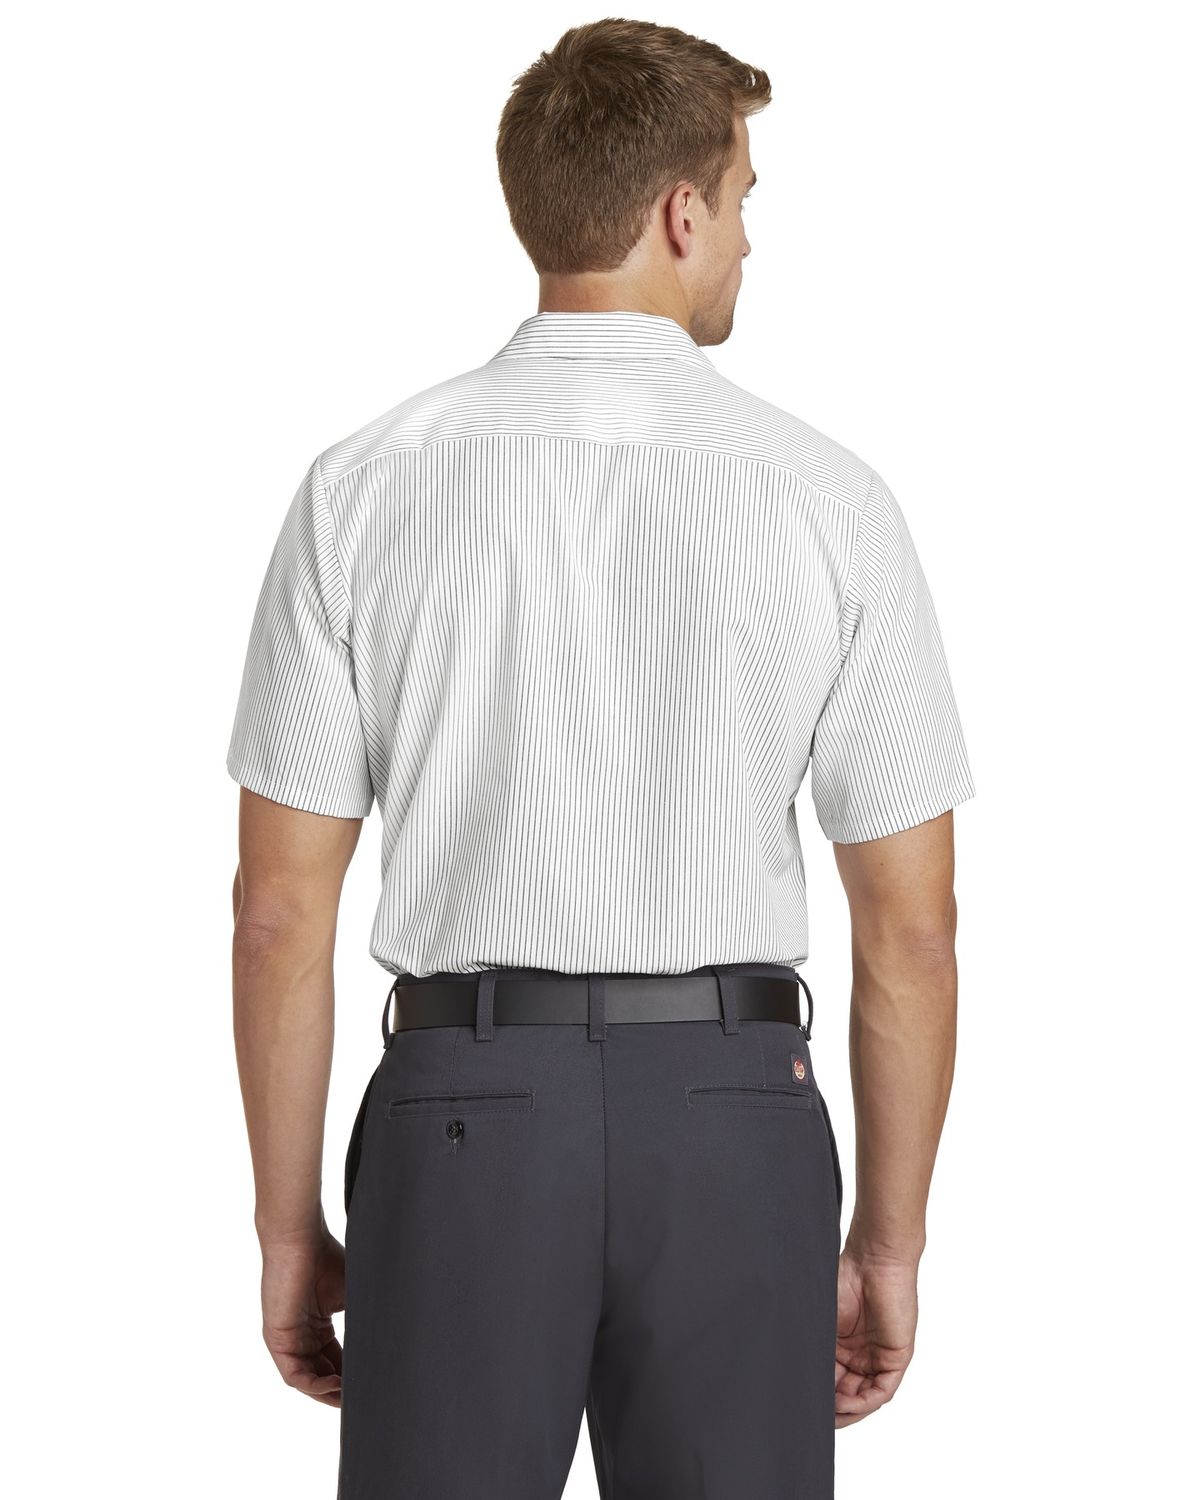 'Red Kap CS20LONG Long Size, Short Sleeve Striped Industrial Work Shirt.'